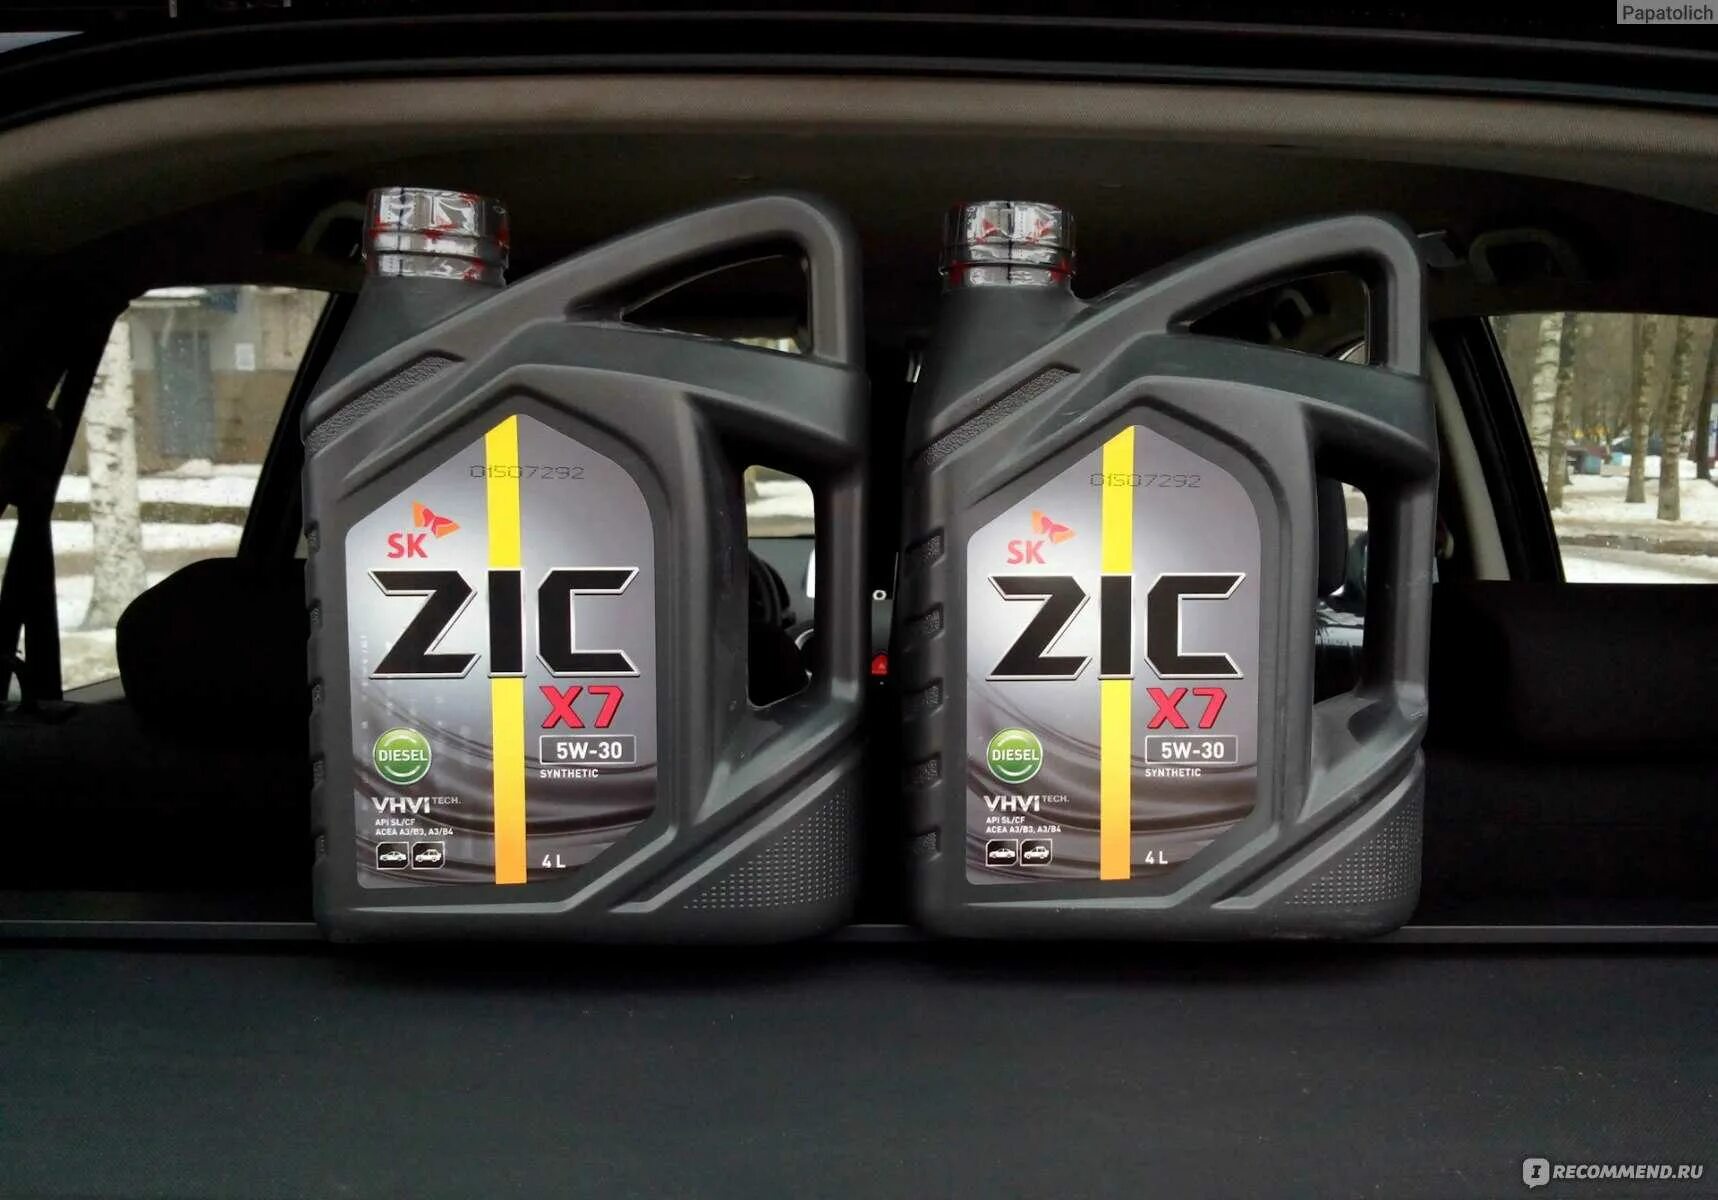 Zic сайт производителя. ZIC 10 40 Oil. Моторное масло ZIC x7 5w-30. ZIC x7 Diesel 5w30 (6л) 172610. Масло ZIC Rexton 2.7.